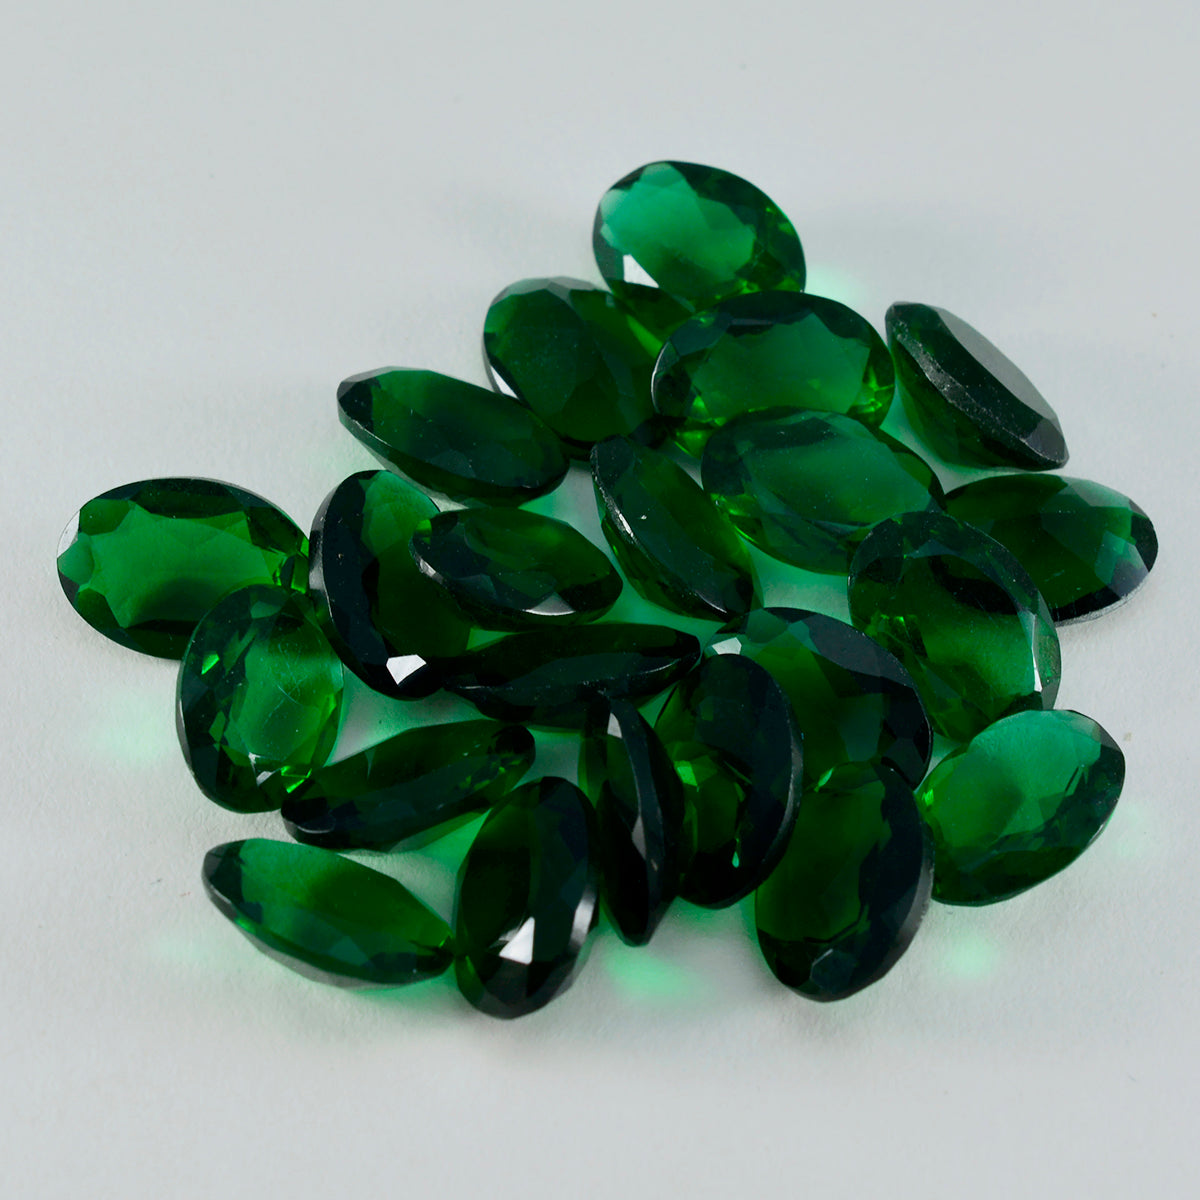 riyogems 1шт зеленый изумруд граненый 8x10 мм овальной формы красивые качественные драгоценные камни